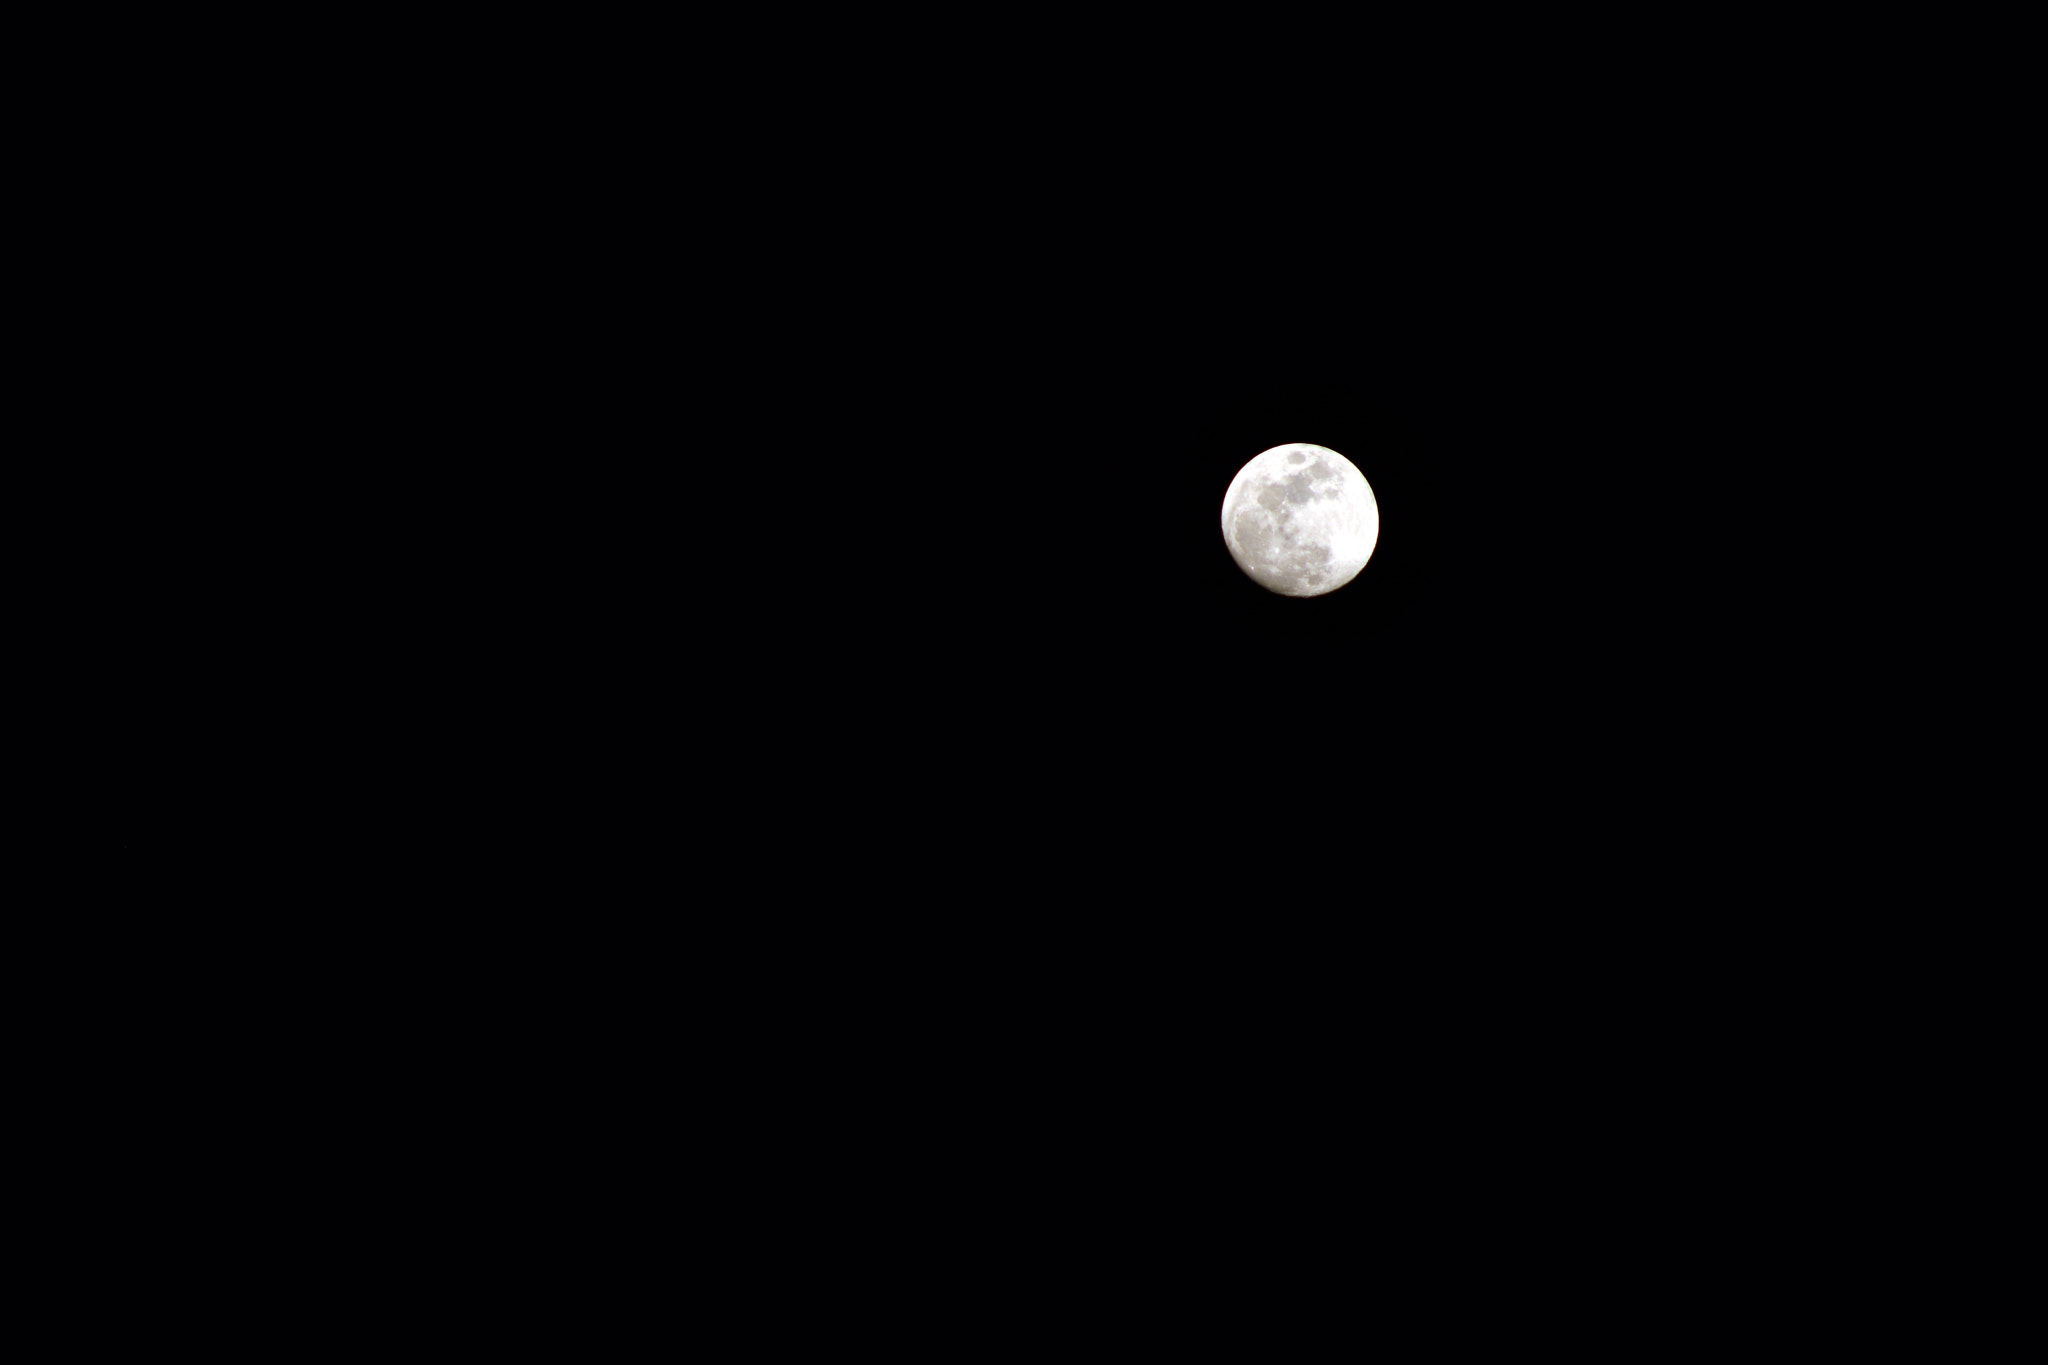 Nikon D7100 sample photo. A clear moon photography